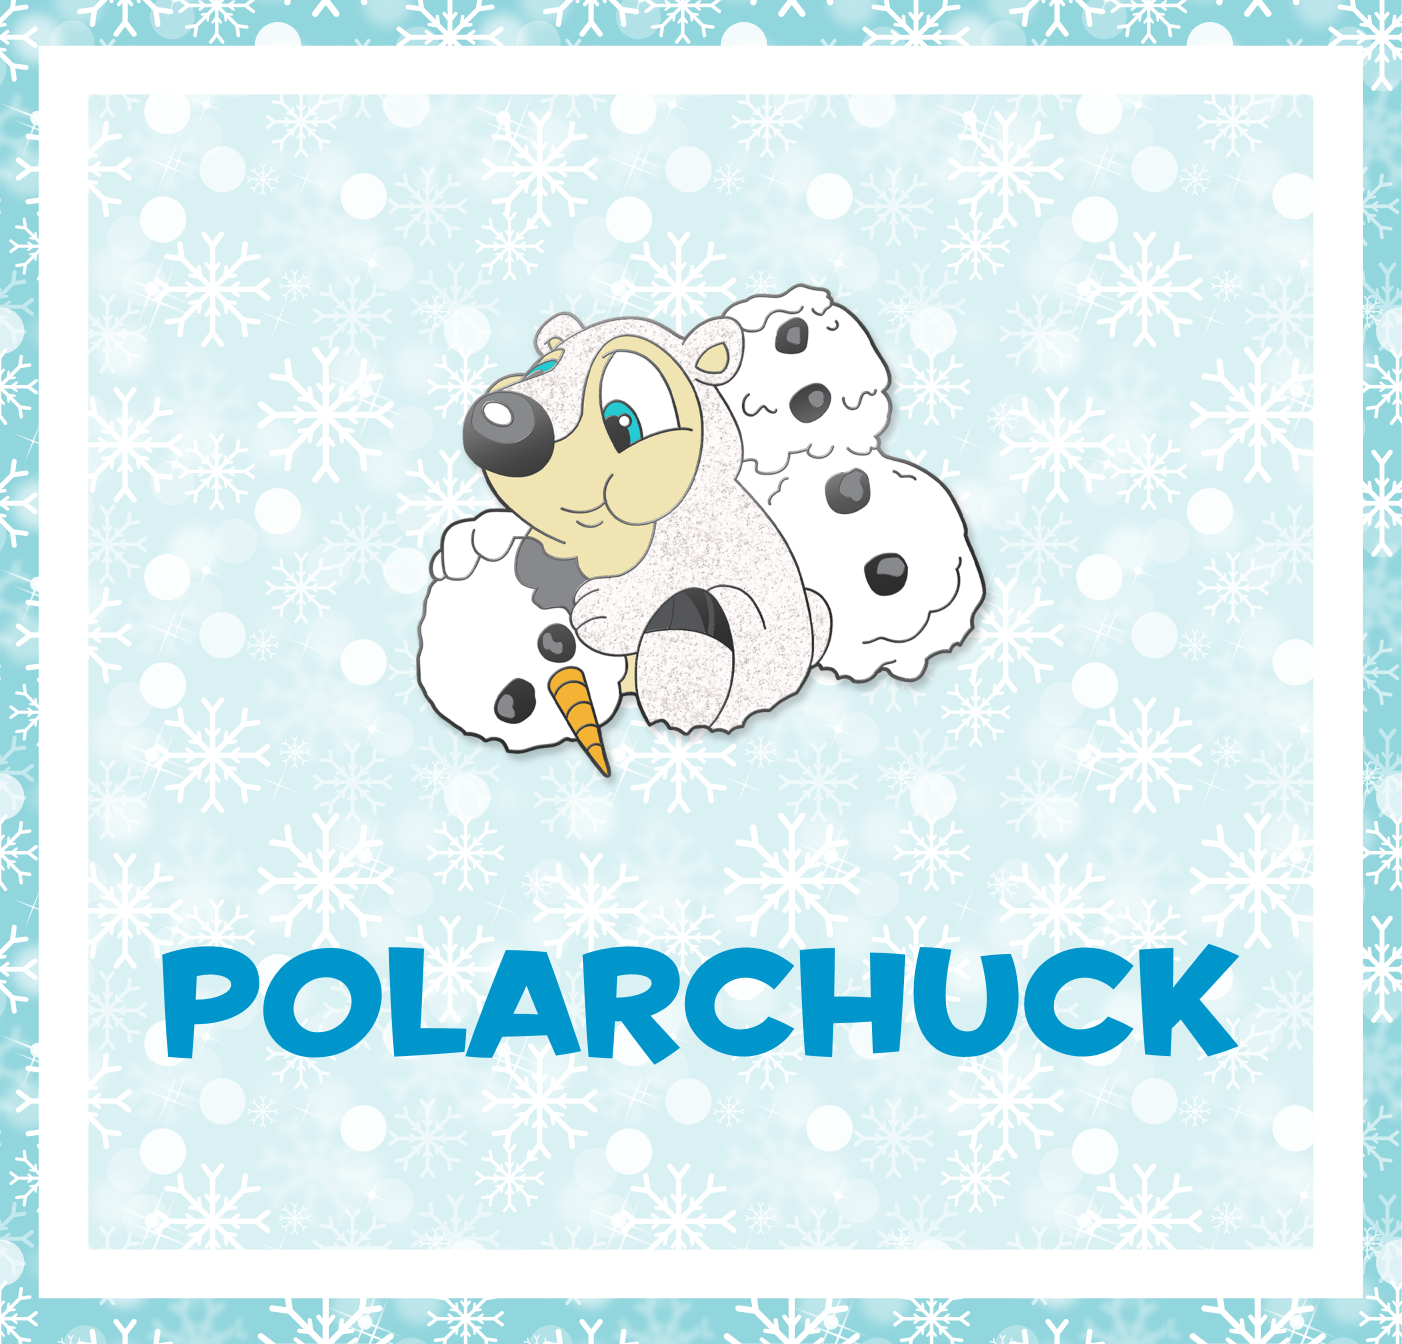 Polarchuck Pin